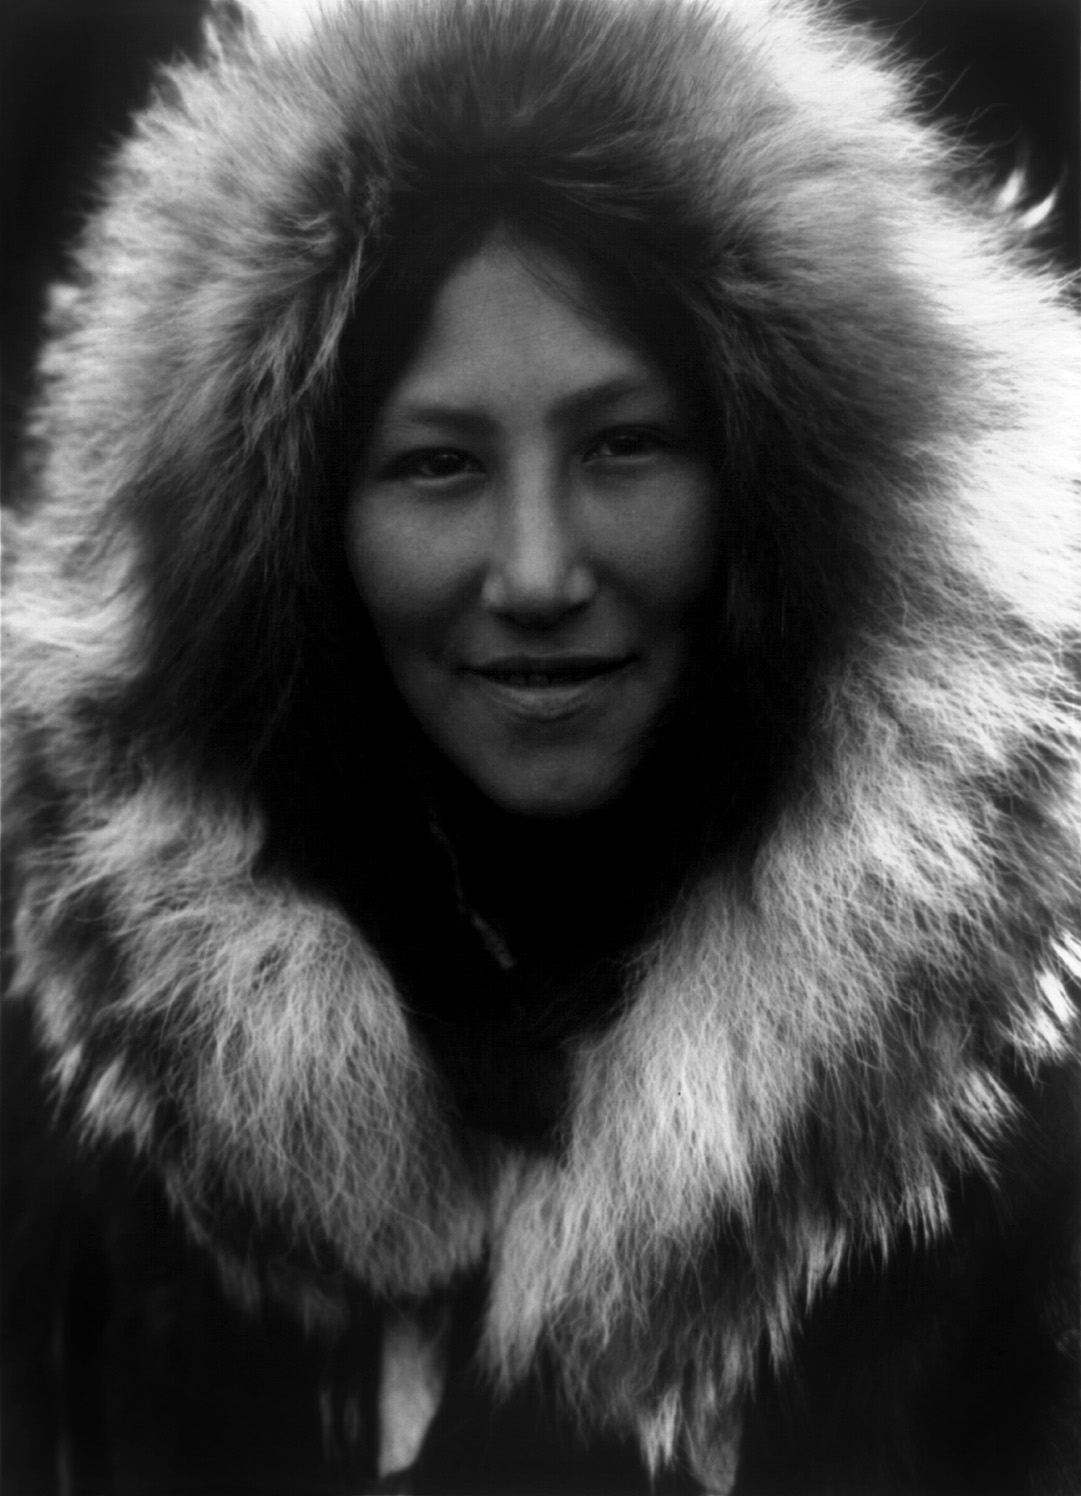 RÃ©sultat de recherche d'images pour "portrait native women canada"